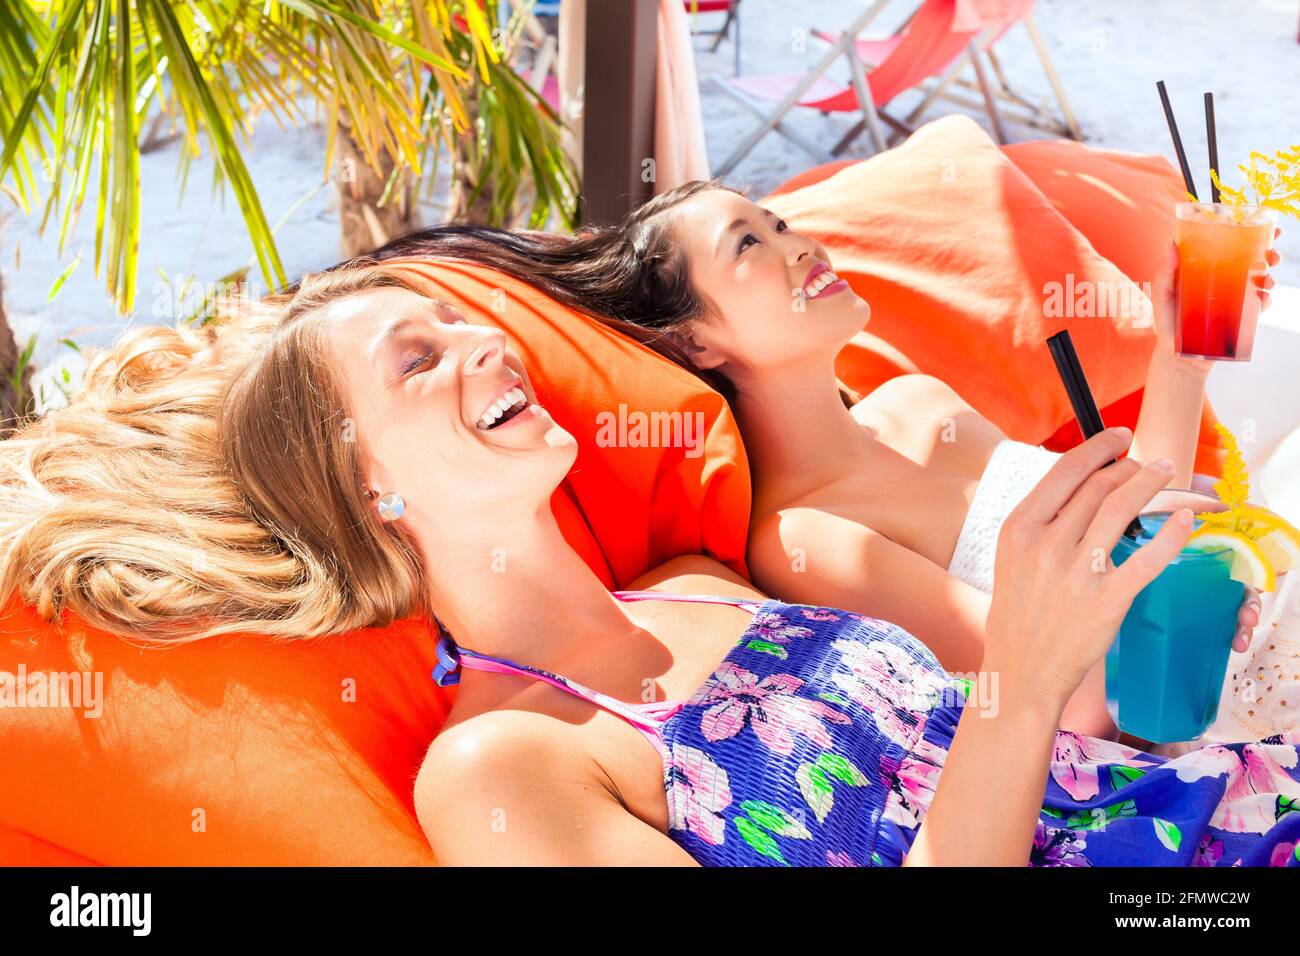 concepto de vacaciones, dos mujeres jóvenes en la playa Foto de stock